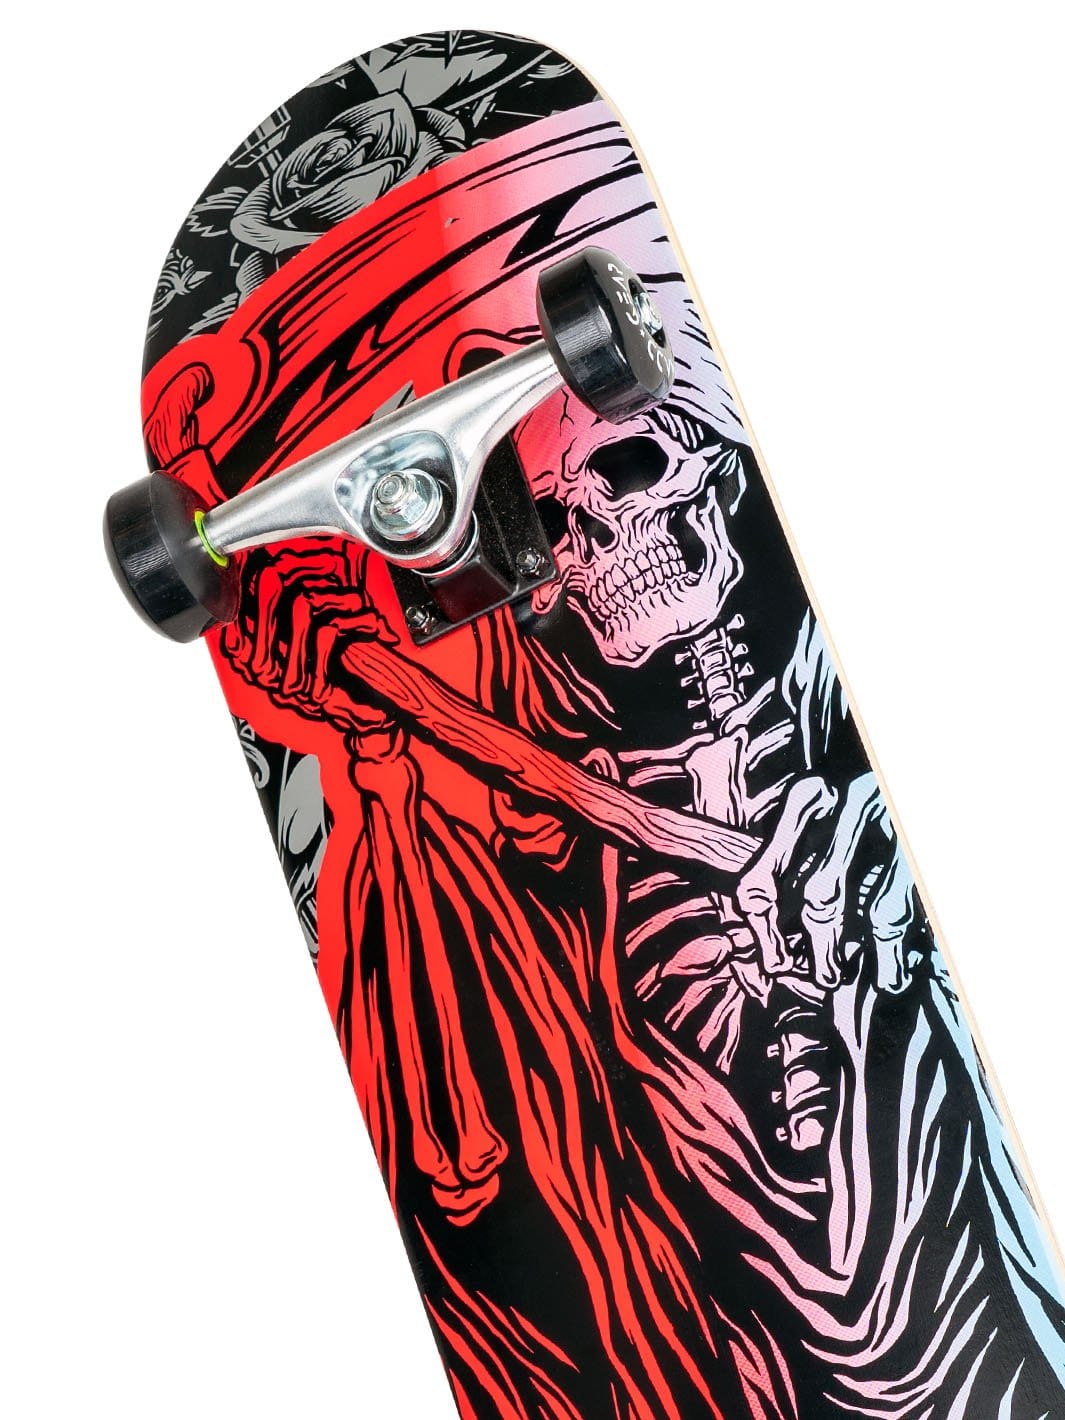 31" Kickflip Spec Skateboard - Reaper - Madd Gear Global | Est 2002